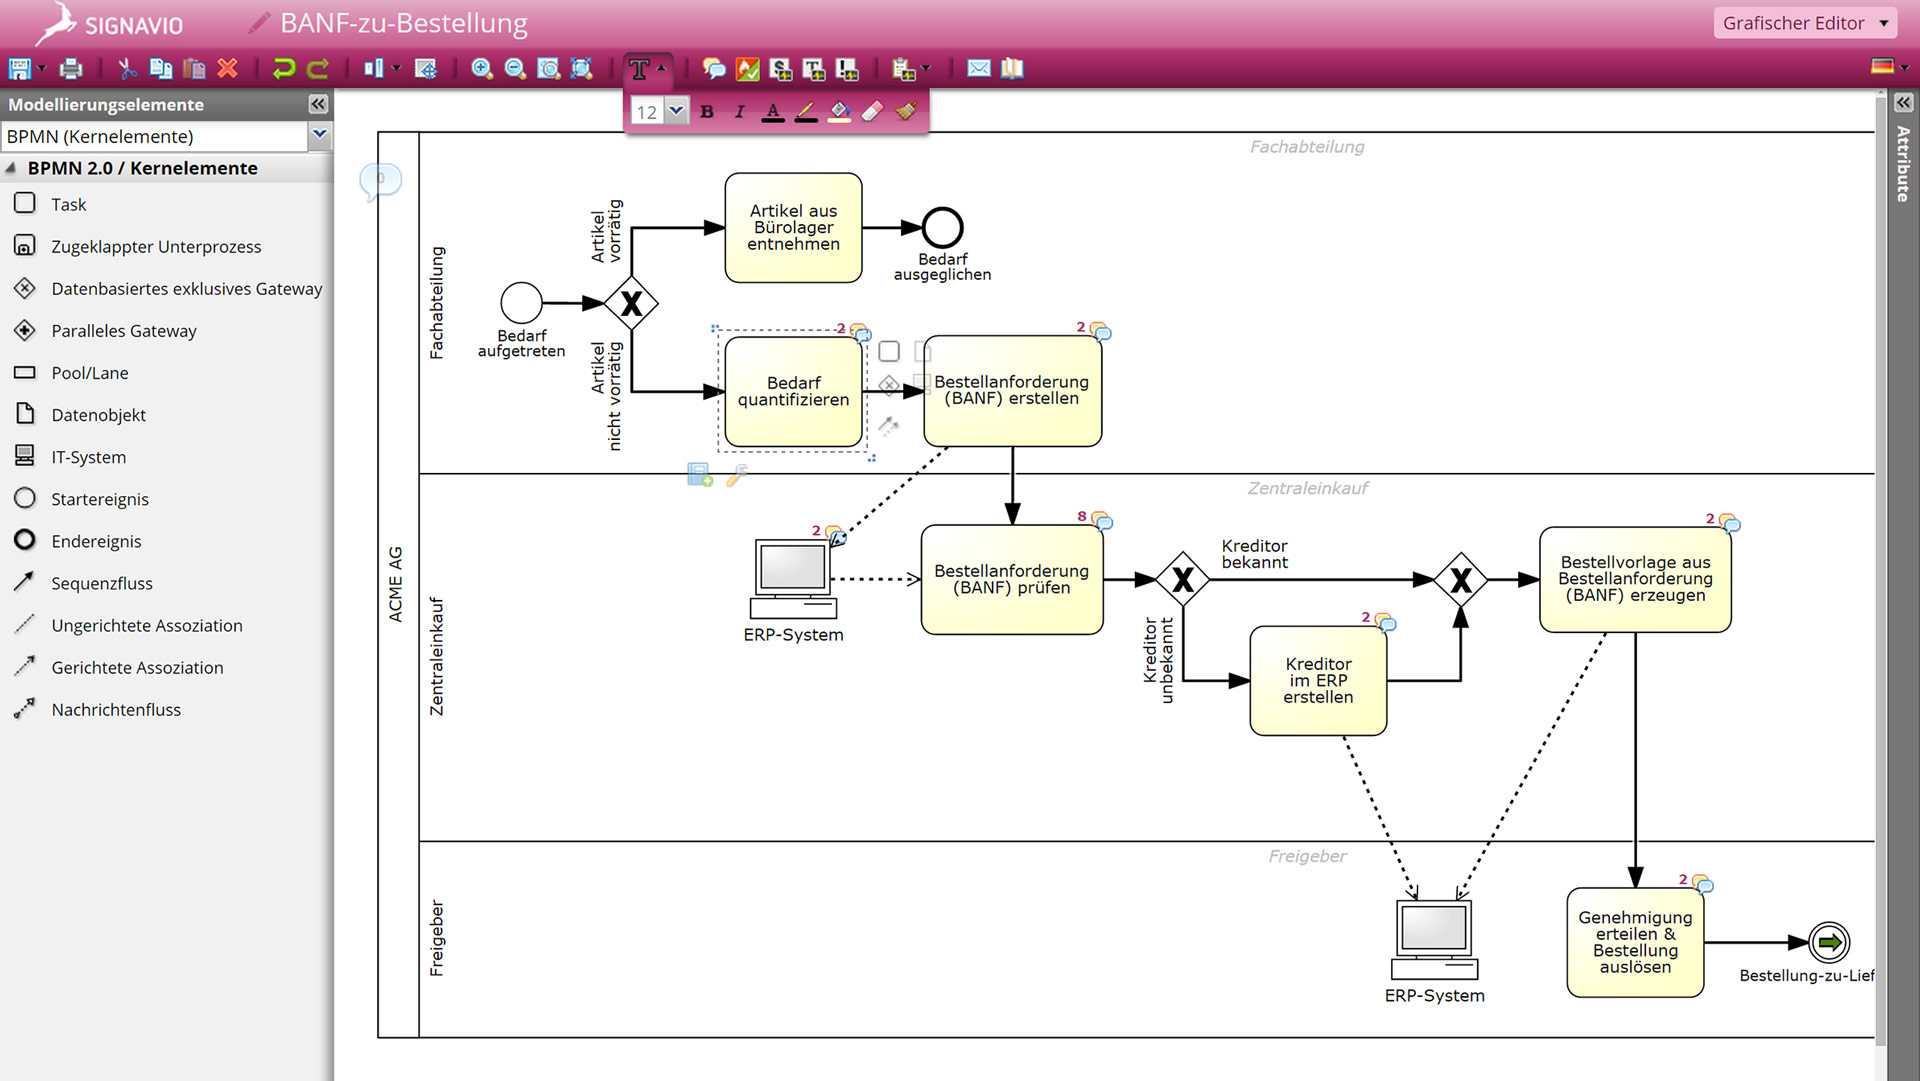 Beispiel zu Prozessmanagement: Einkaufsprozess im Signavio Process Manager